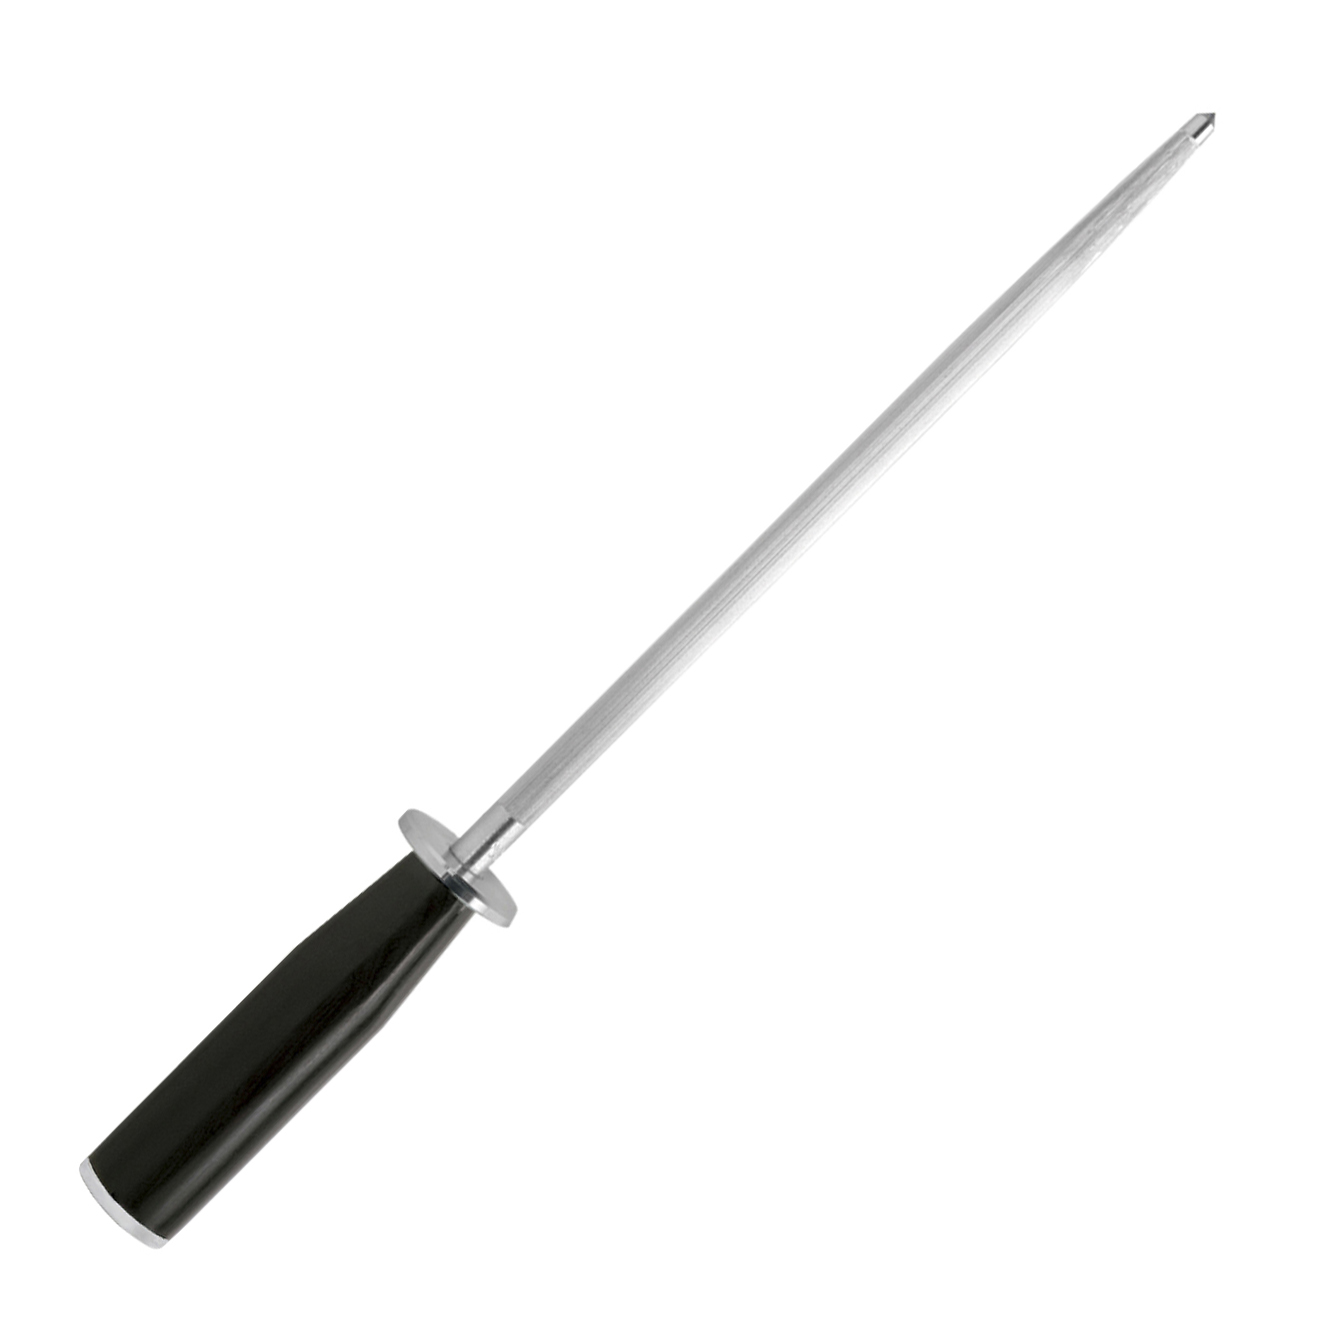 DM0790 NIB Shun 9 inch Combination Sharpening Steel Honing 